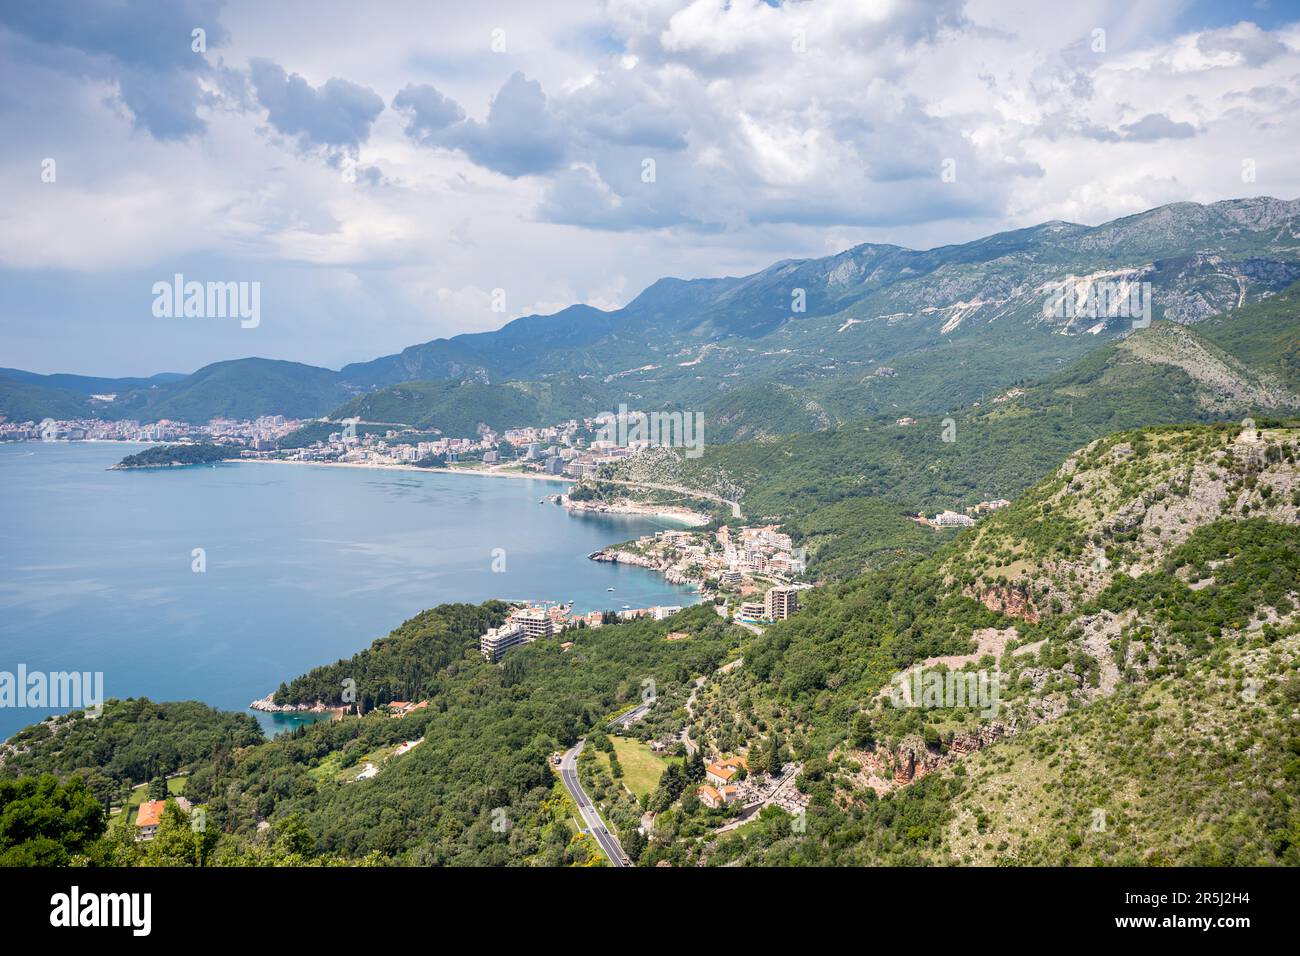 Ein atemberaubender Blick auf die Budva Riverira vom Rand eines Gipfels an der Küste Montenegros. Stockfoto